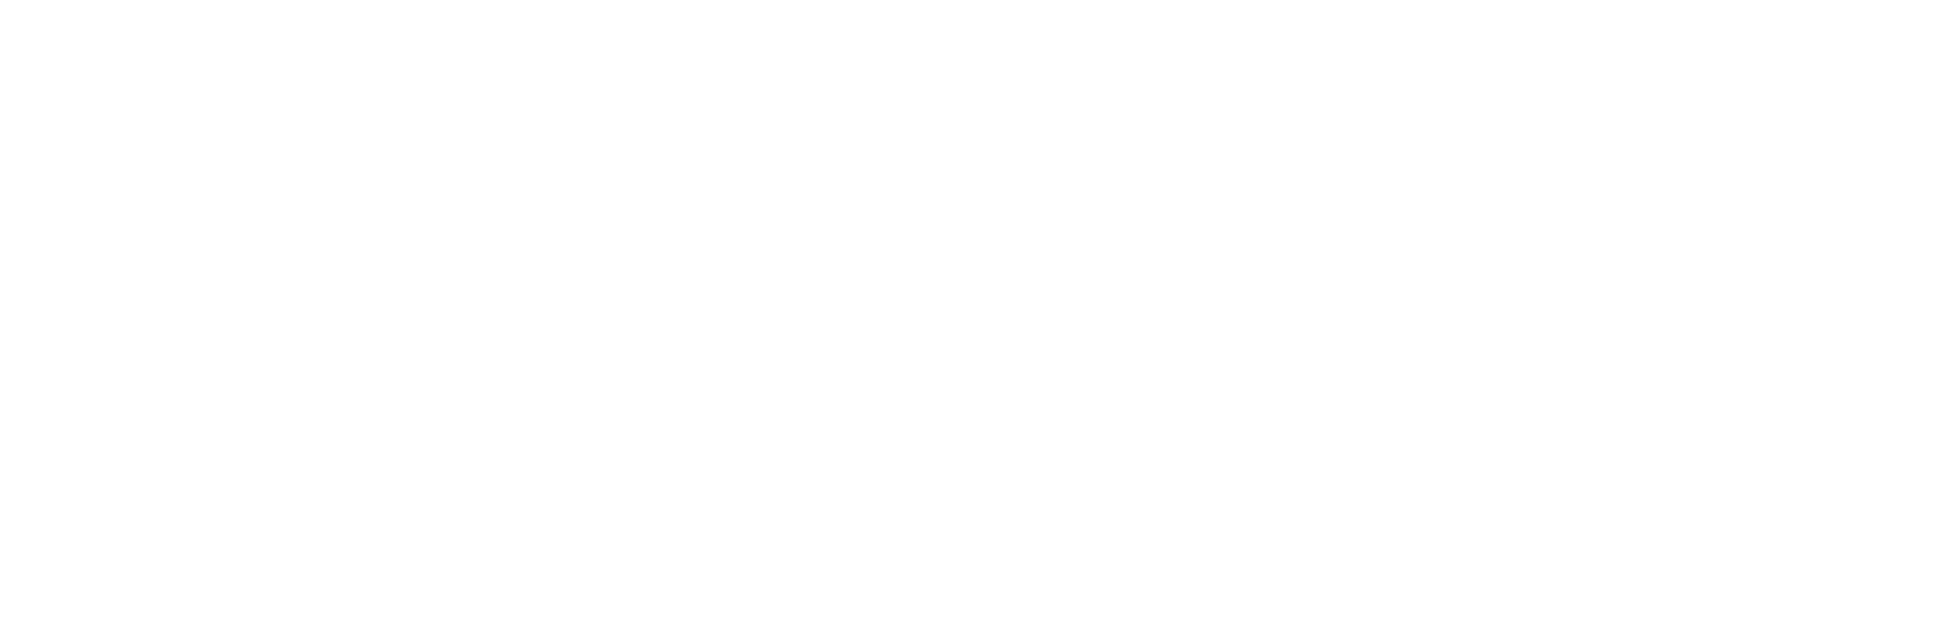 HeliSimmer.com Official Shop!